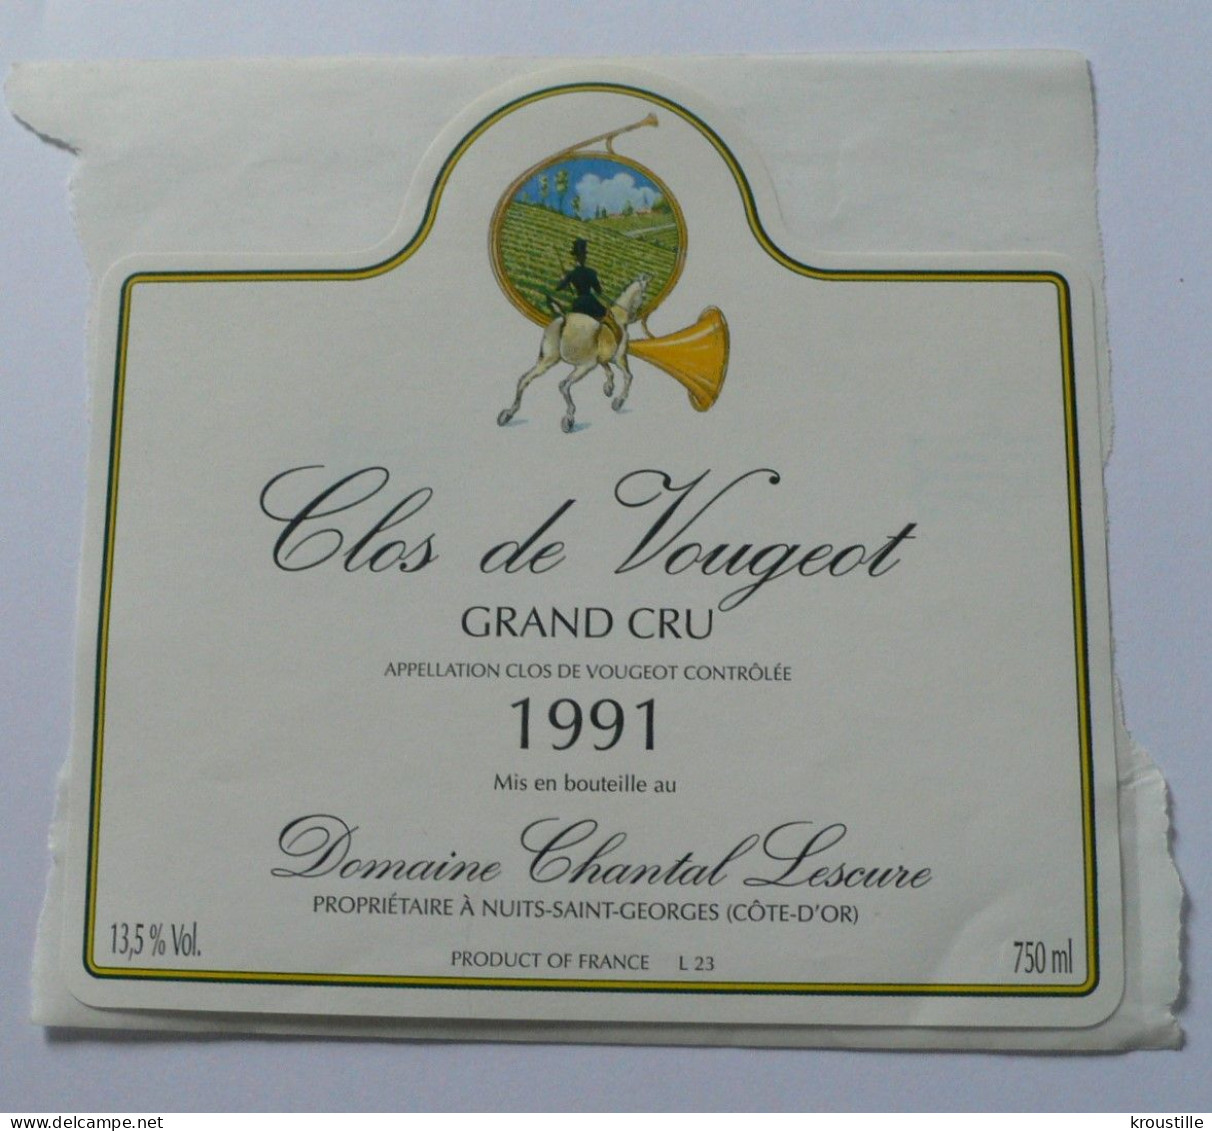 CLOS DE VOUGEOT - GRAND CRU 1991 - ETIQUETTE NEUVE - THEME CHASSE - Jagd